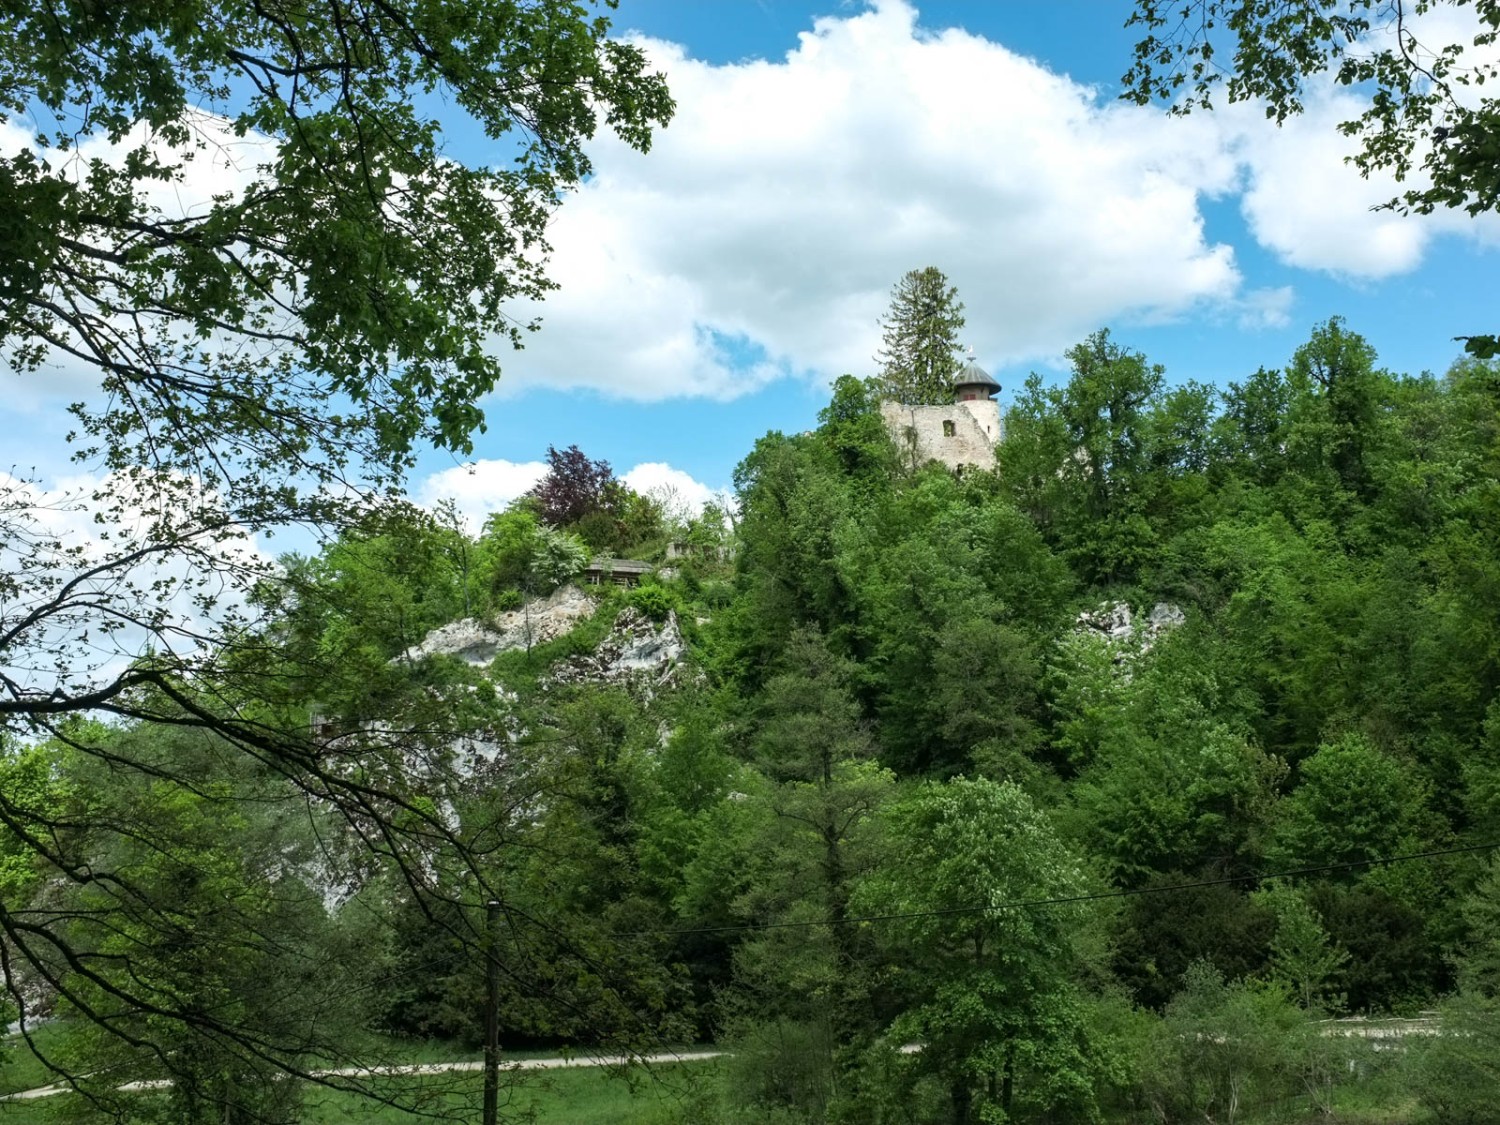 Eine weitere Burg: Das Schloss Birseck sieht man vom Wanderweg aus. Bild: Claudia Peter